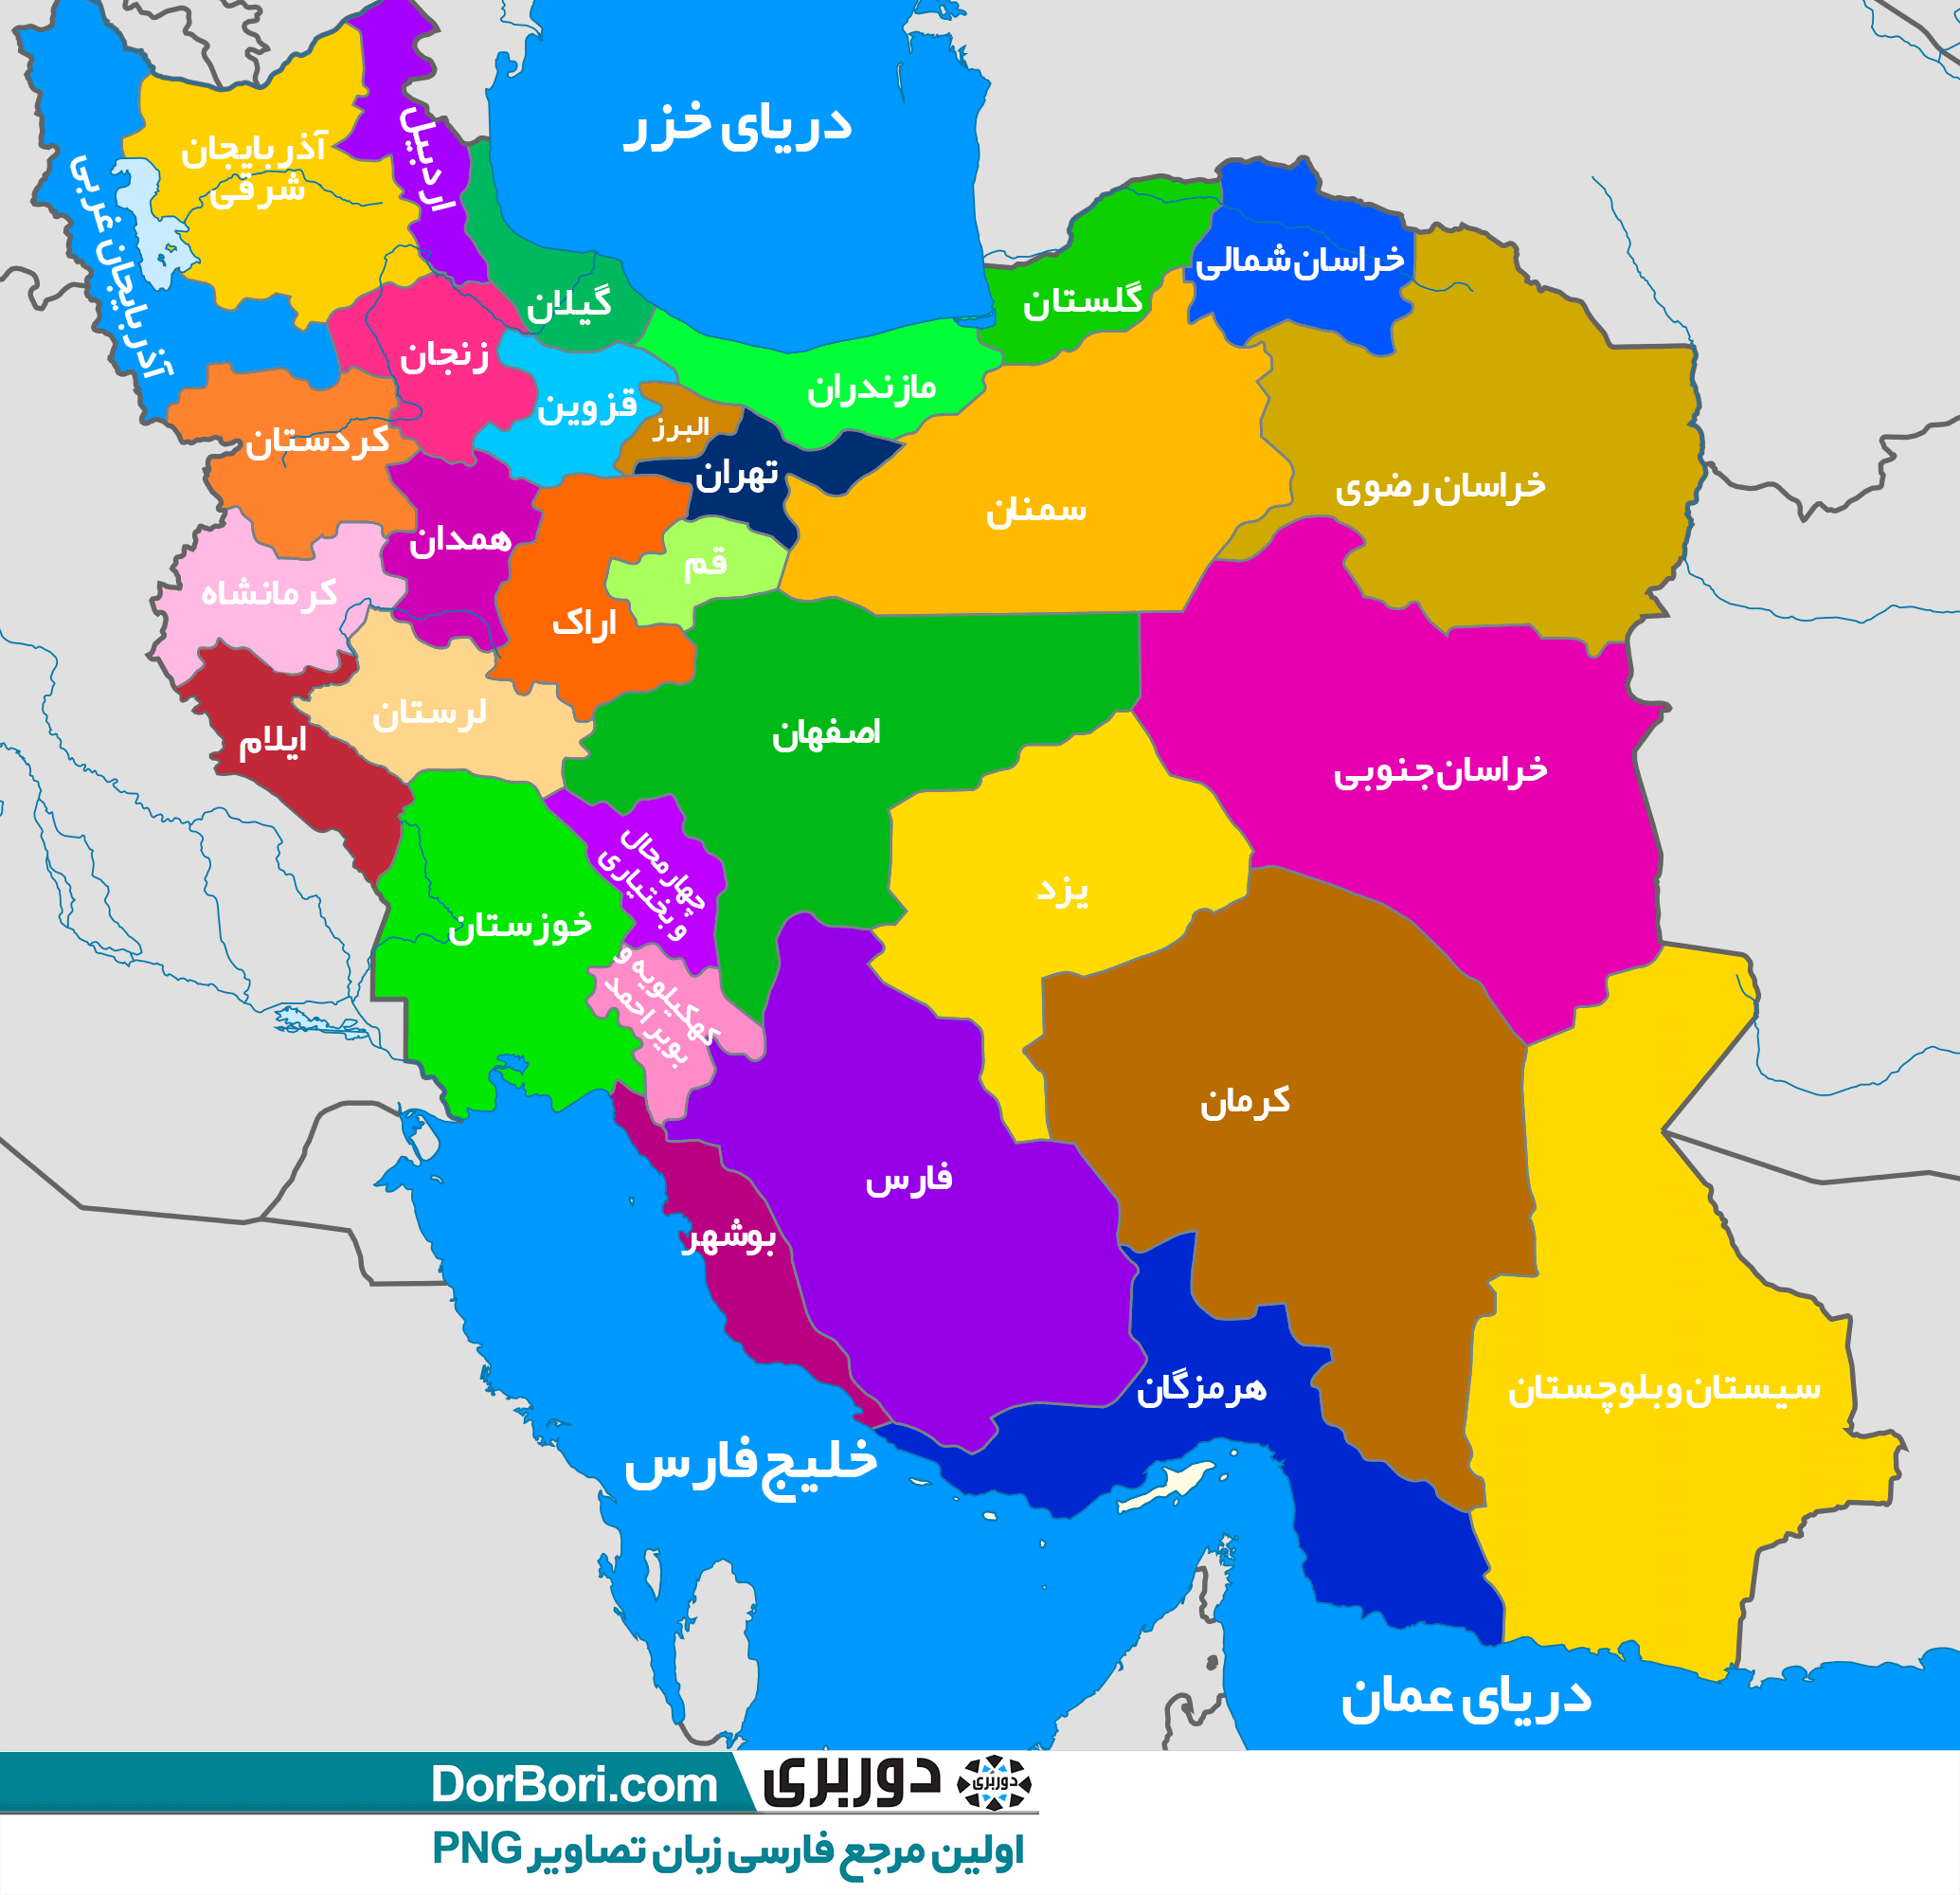 دانلود عکس نقشه ی ایران
